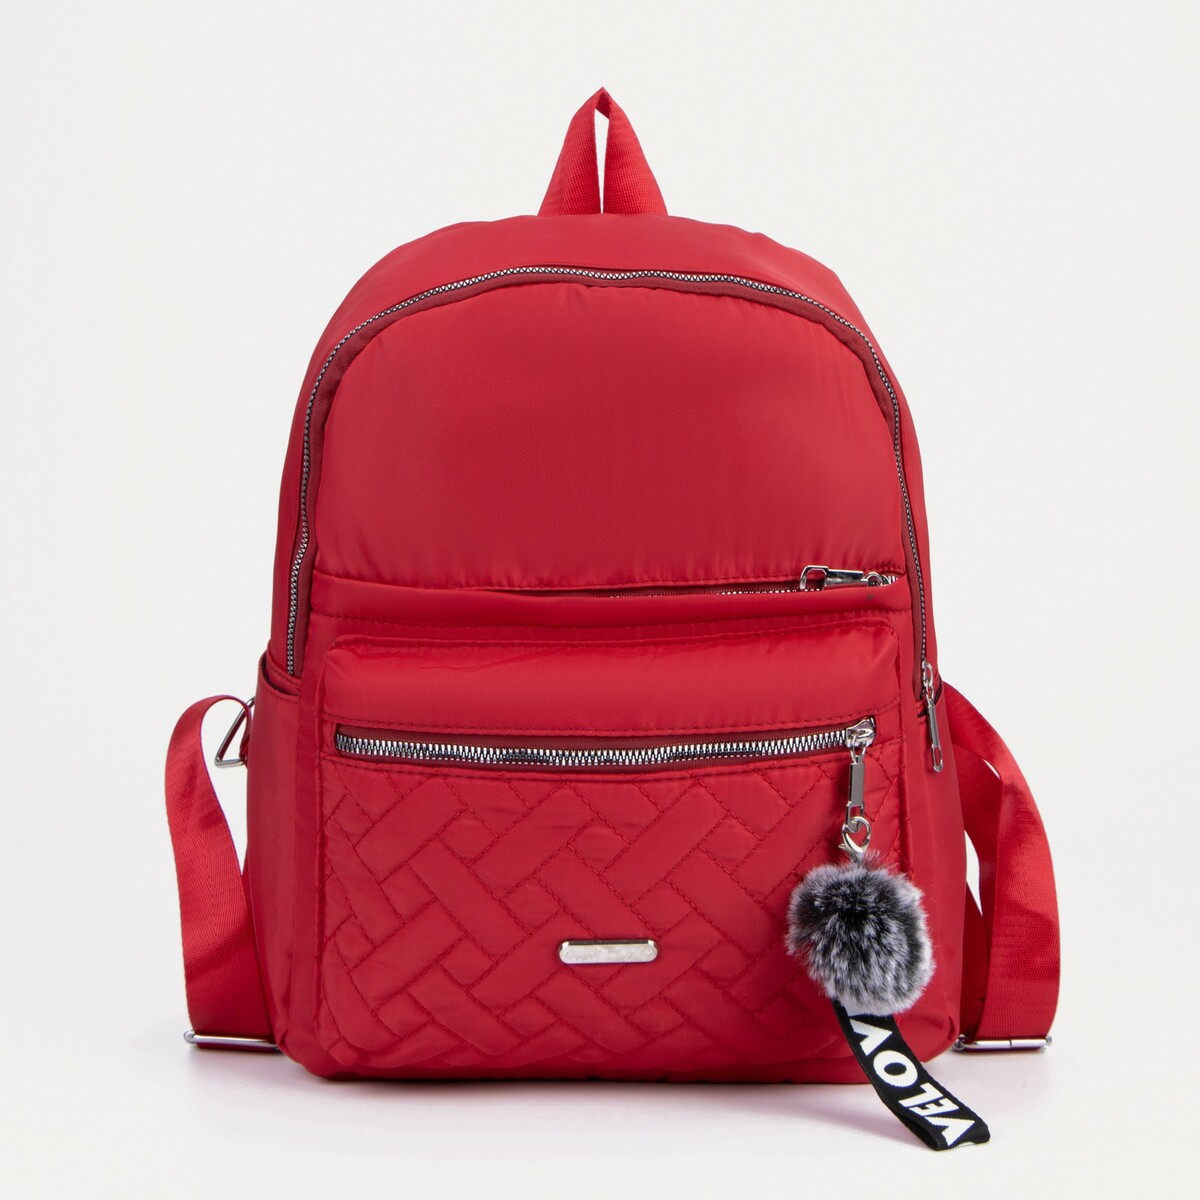 Рюкзак, отдел на молнии, 2 наружных кармана, 2 боковых кармана, цвет красный, No brand